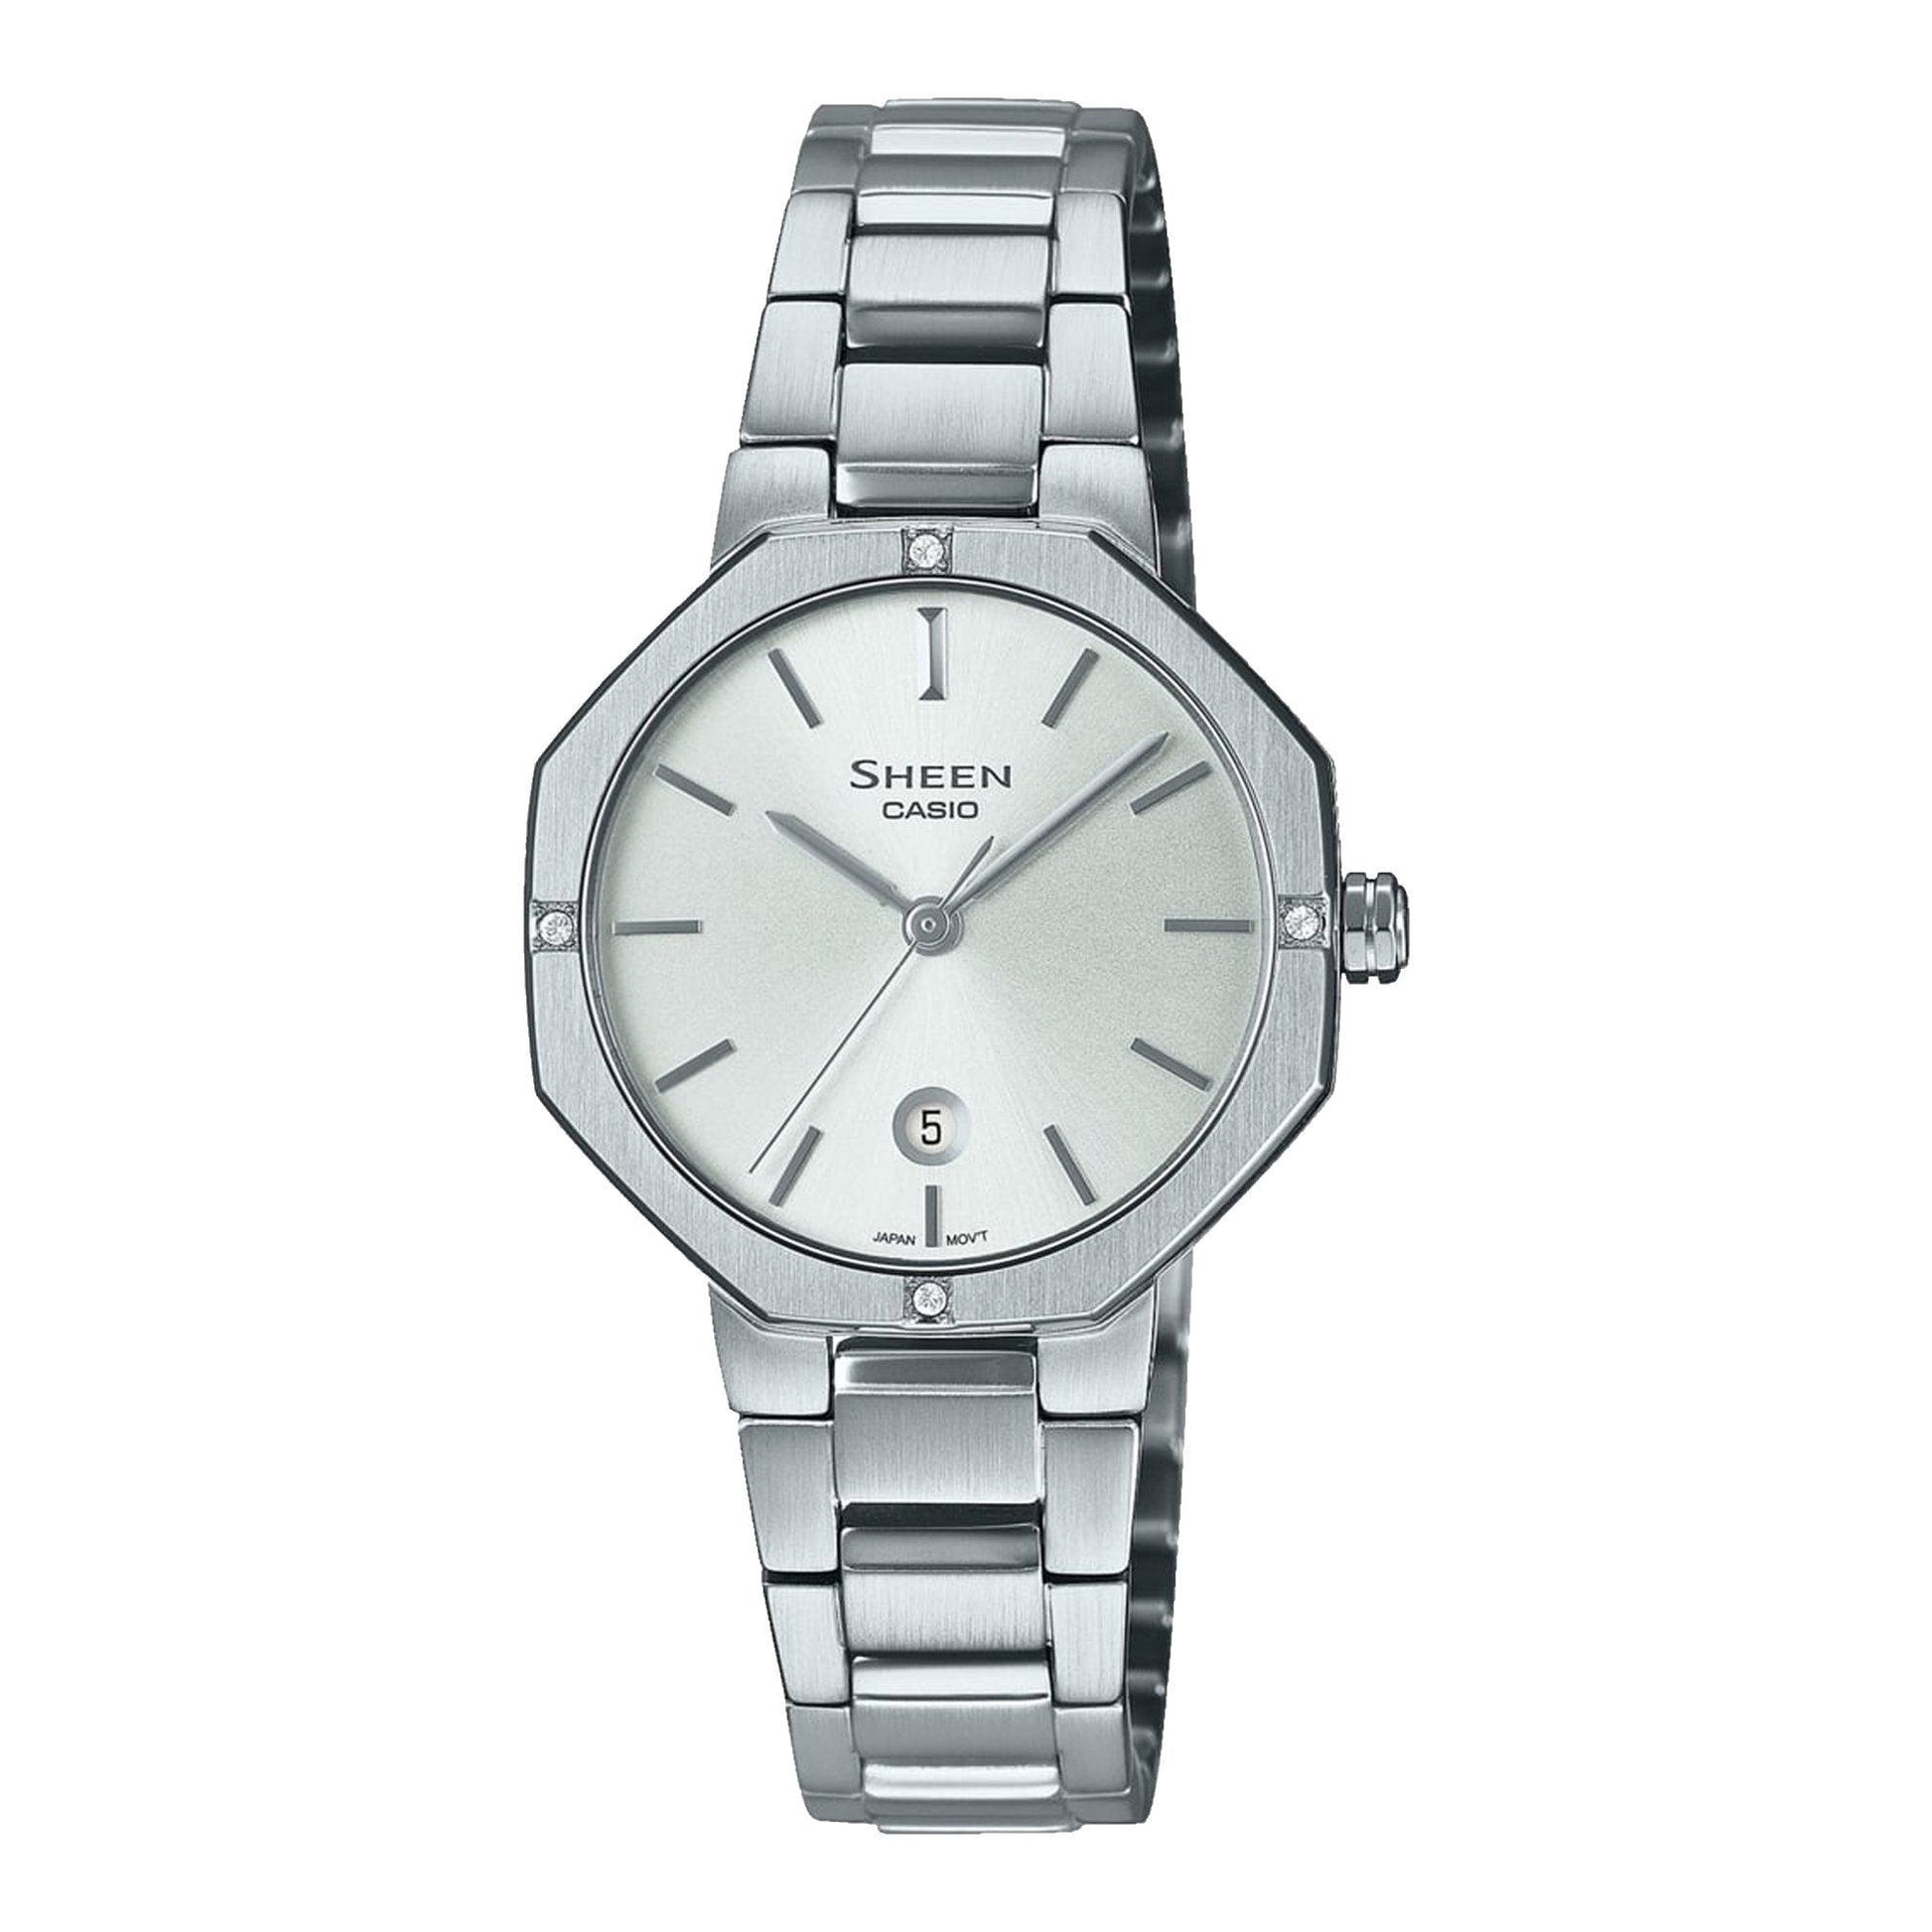 Casio Sheen SHE-4543D-7AUER orologio donna al quarzo - Kechiq Concept Boutique